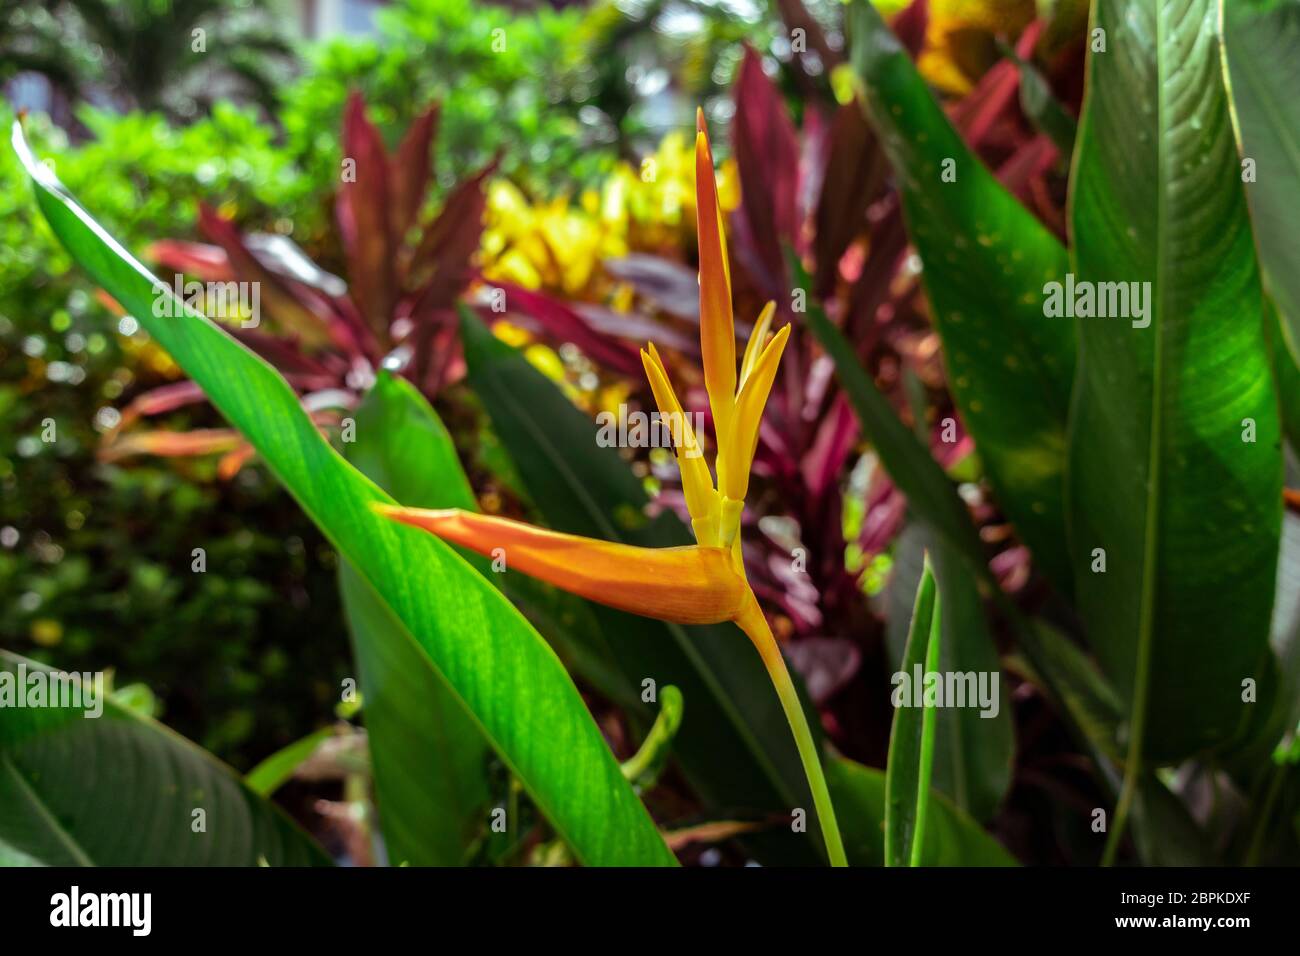 Nahsicht auf eine gelbe junge Heliconia tropische Blume (Heliconia densiflora). Indonesien, Bali, tropischer Regenwald. Stockfoto